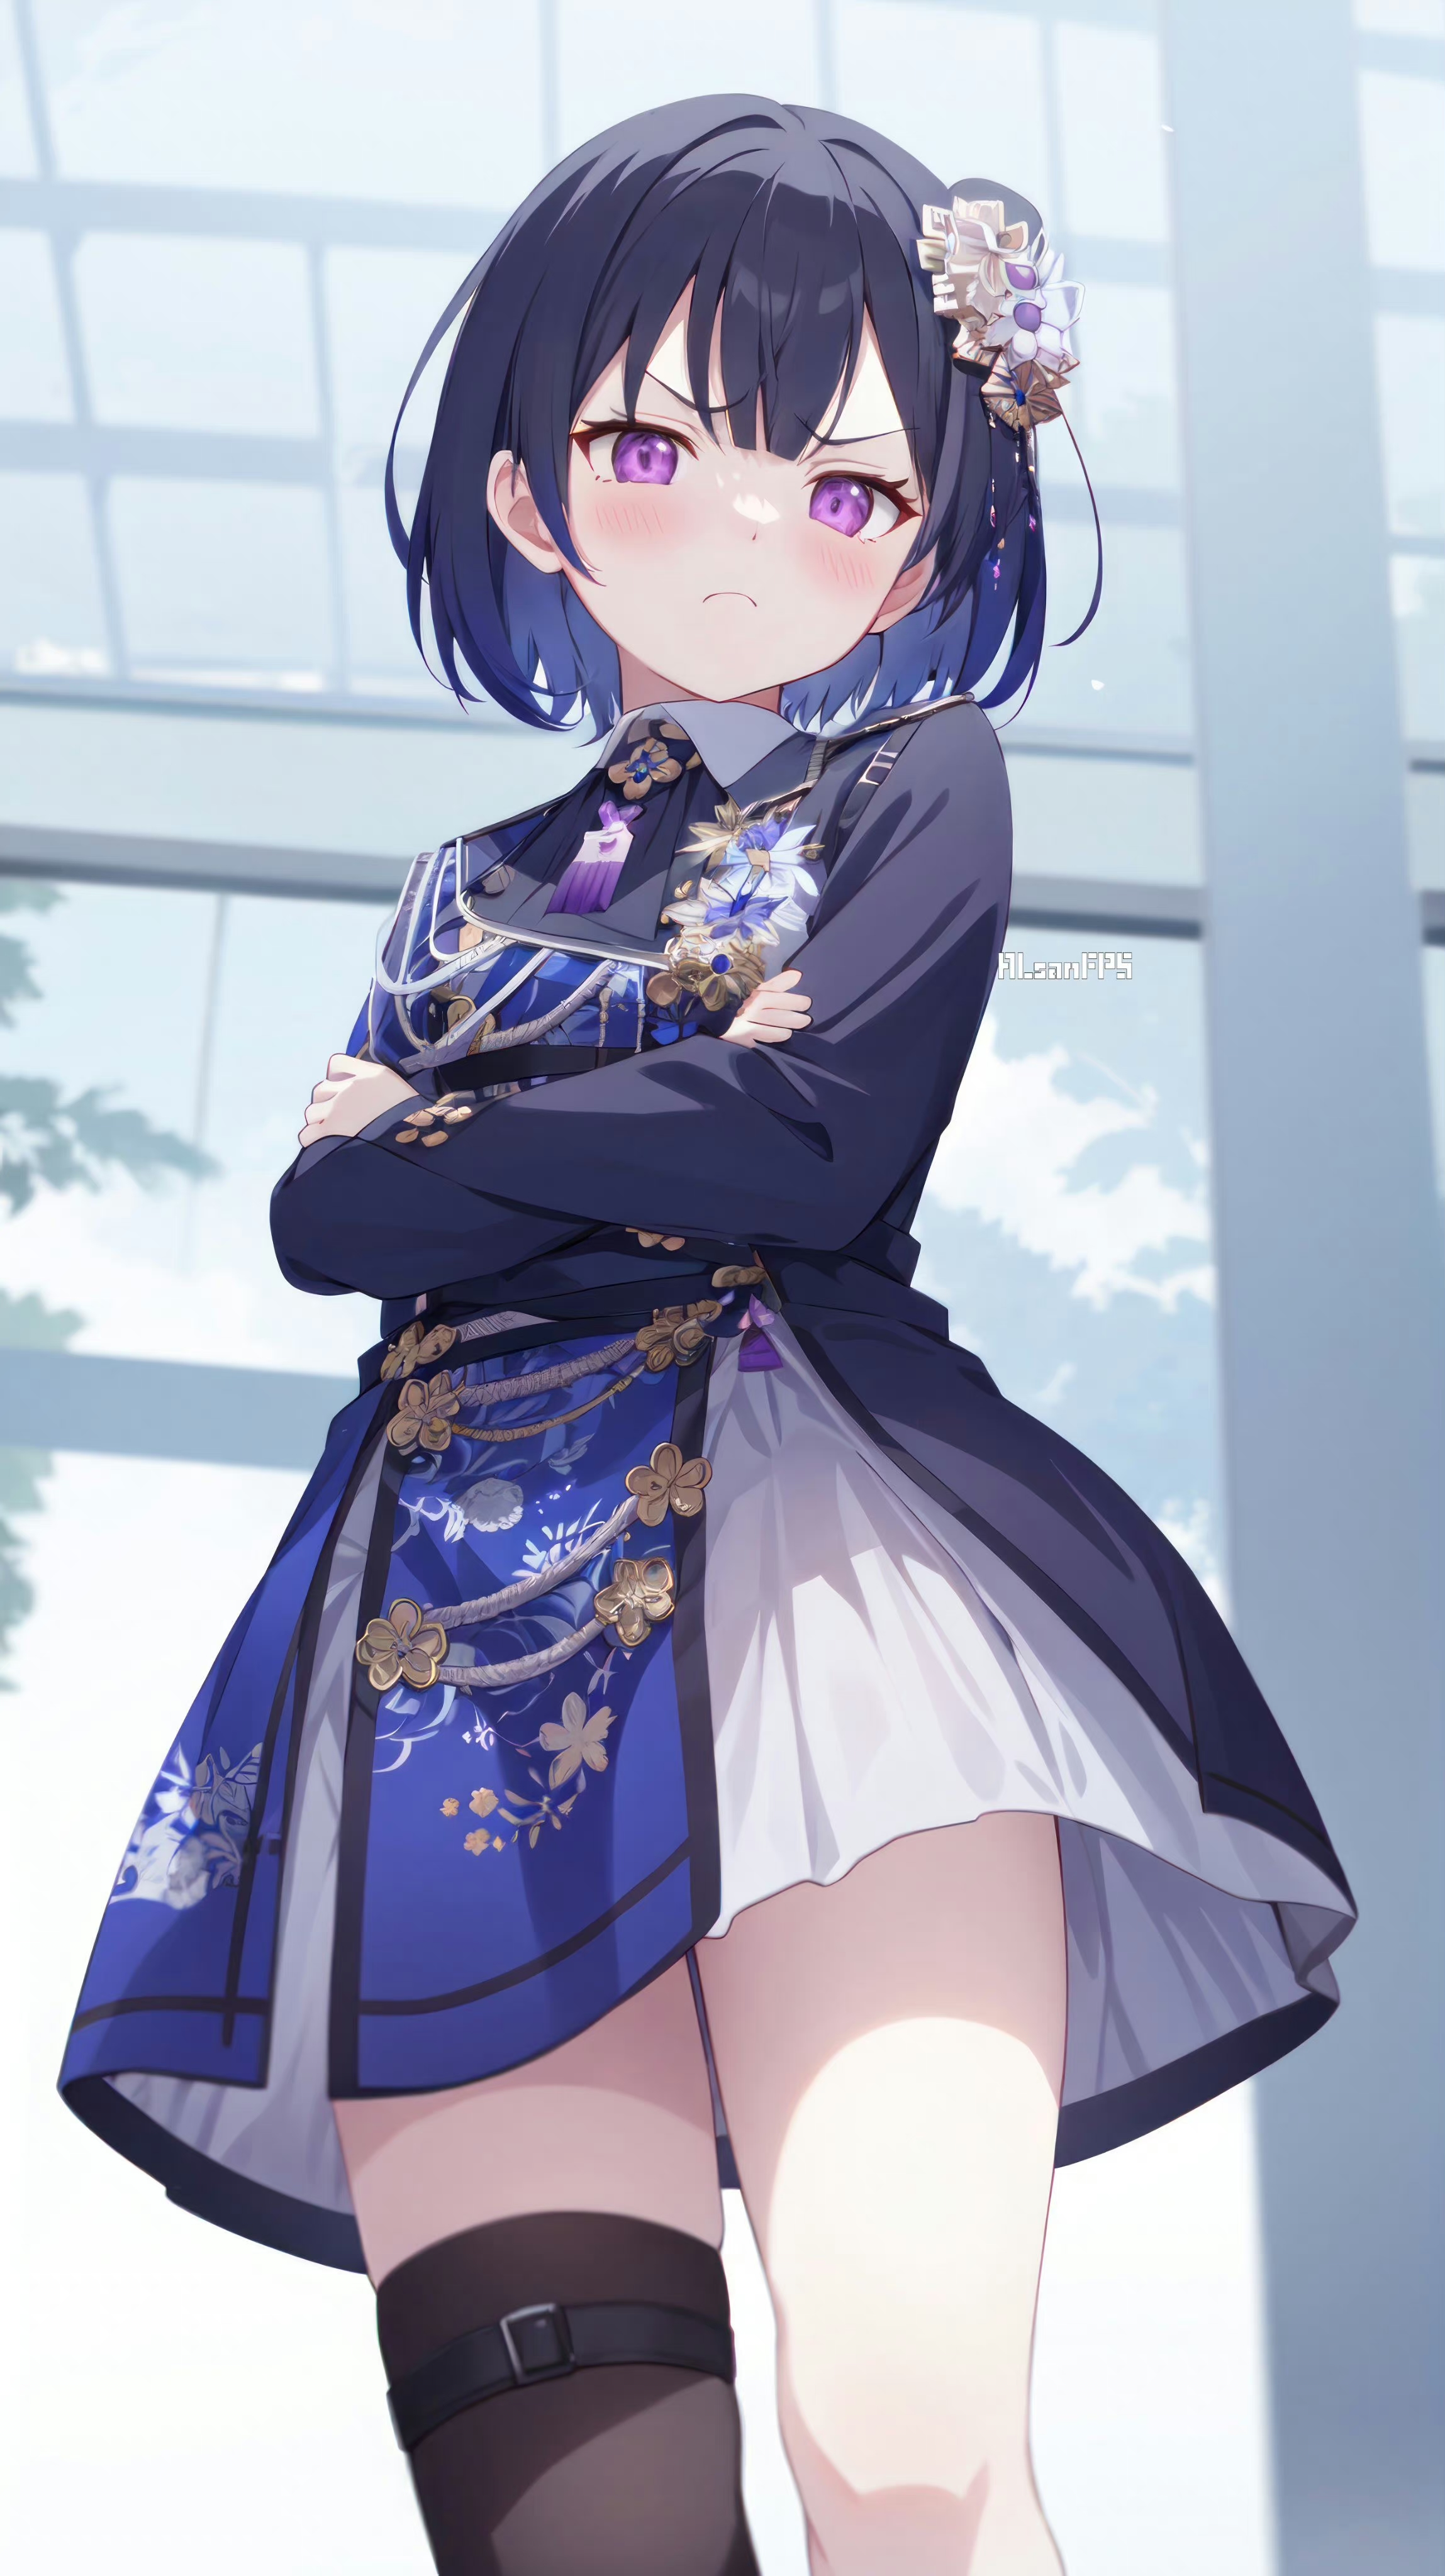 Anime Anime Girls Ichinose Uruha Dress Virtual Youtuber Blushing Arms Crossed Short Hair Looking At  2297x4096